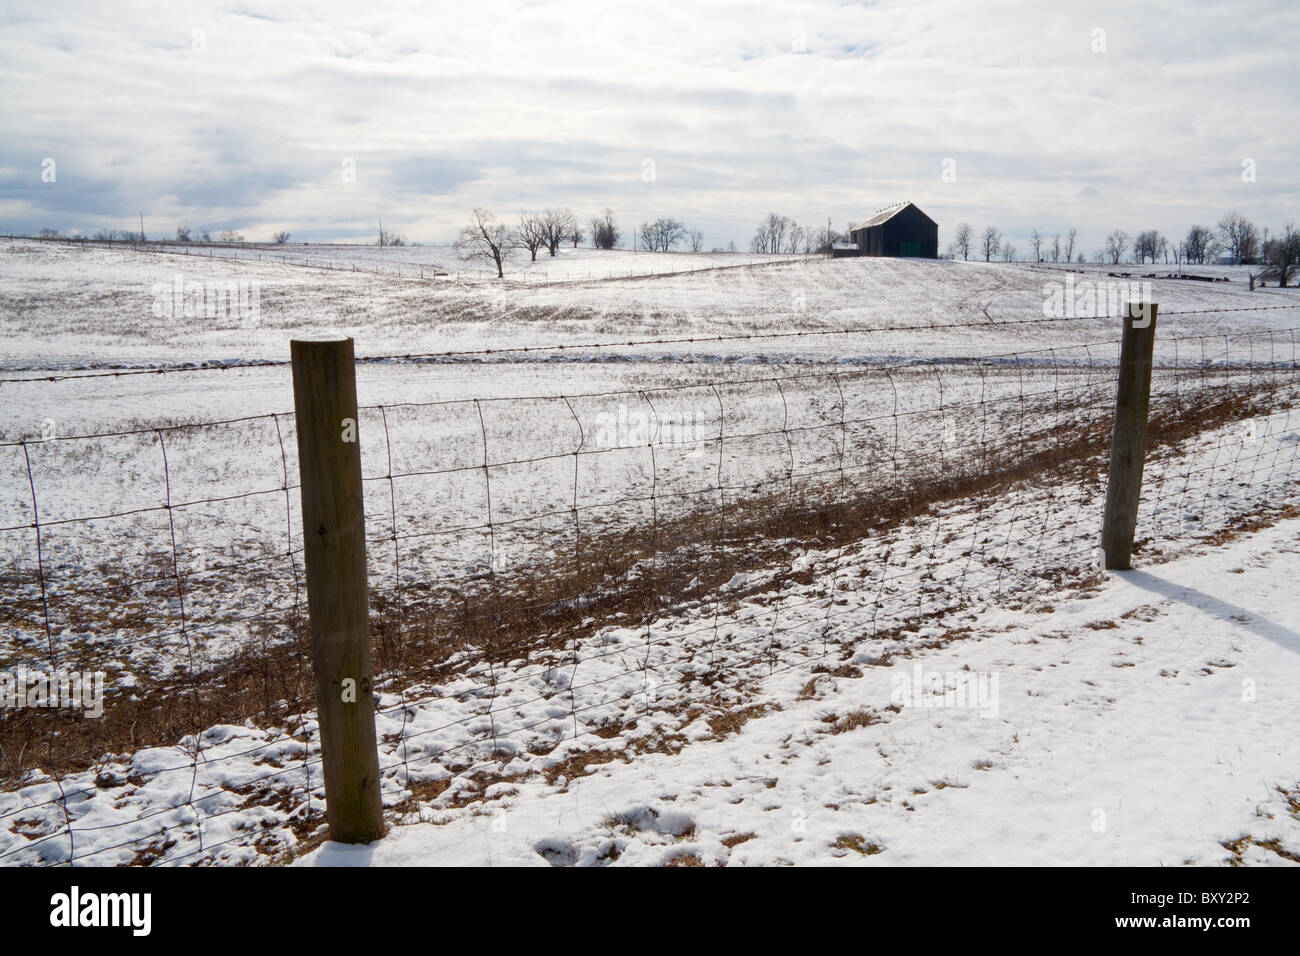 California farm paysage d'hiver avec grange et la neige Banque D'Images